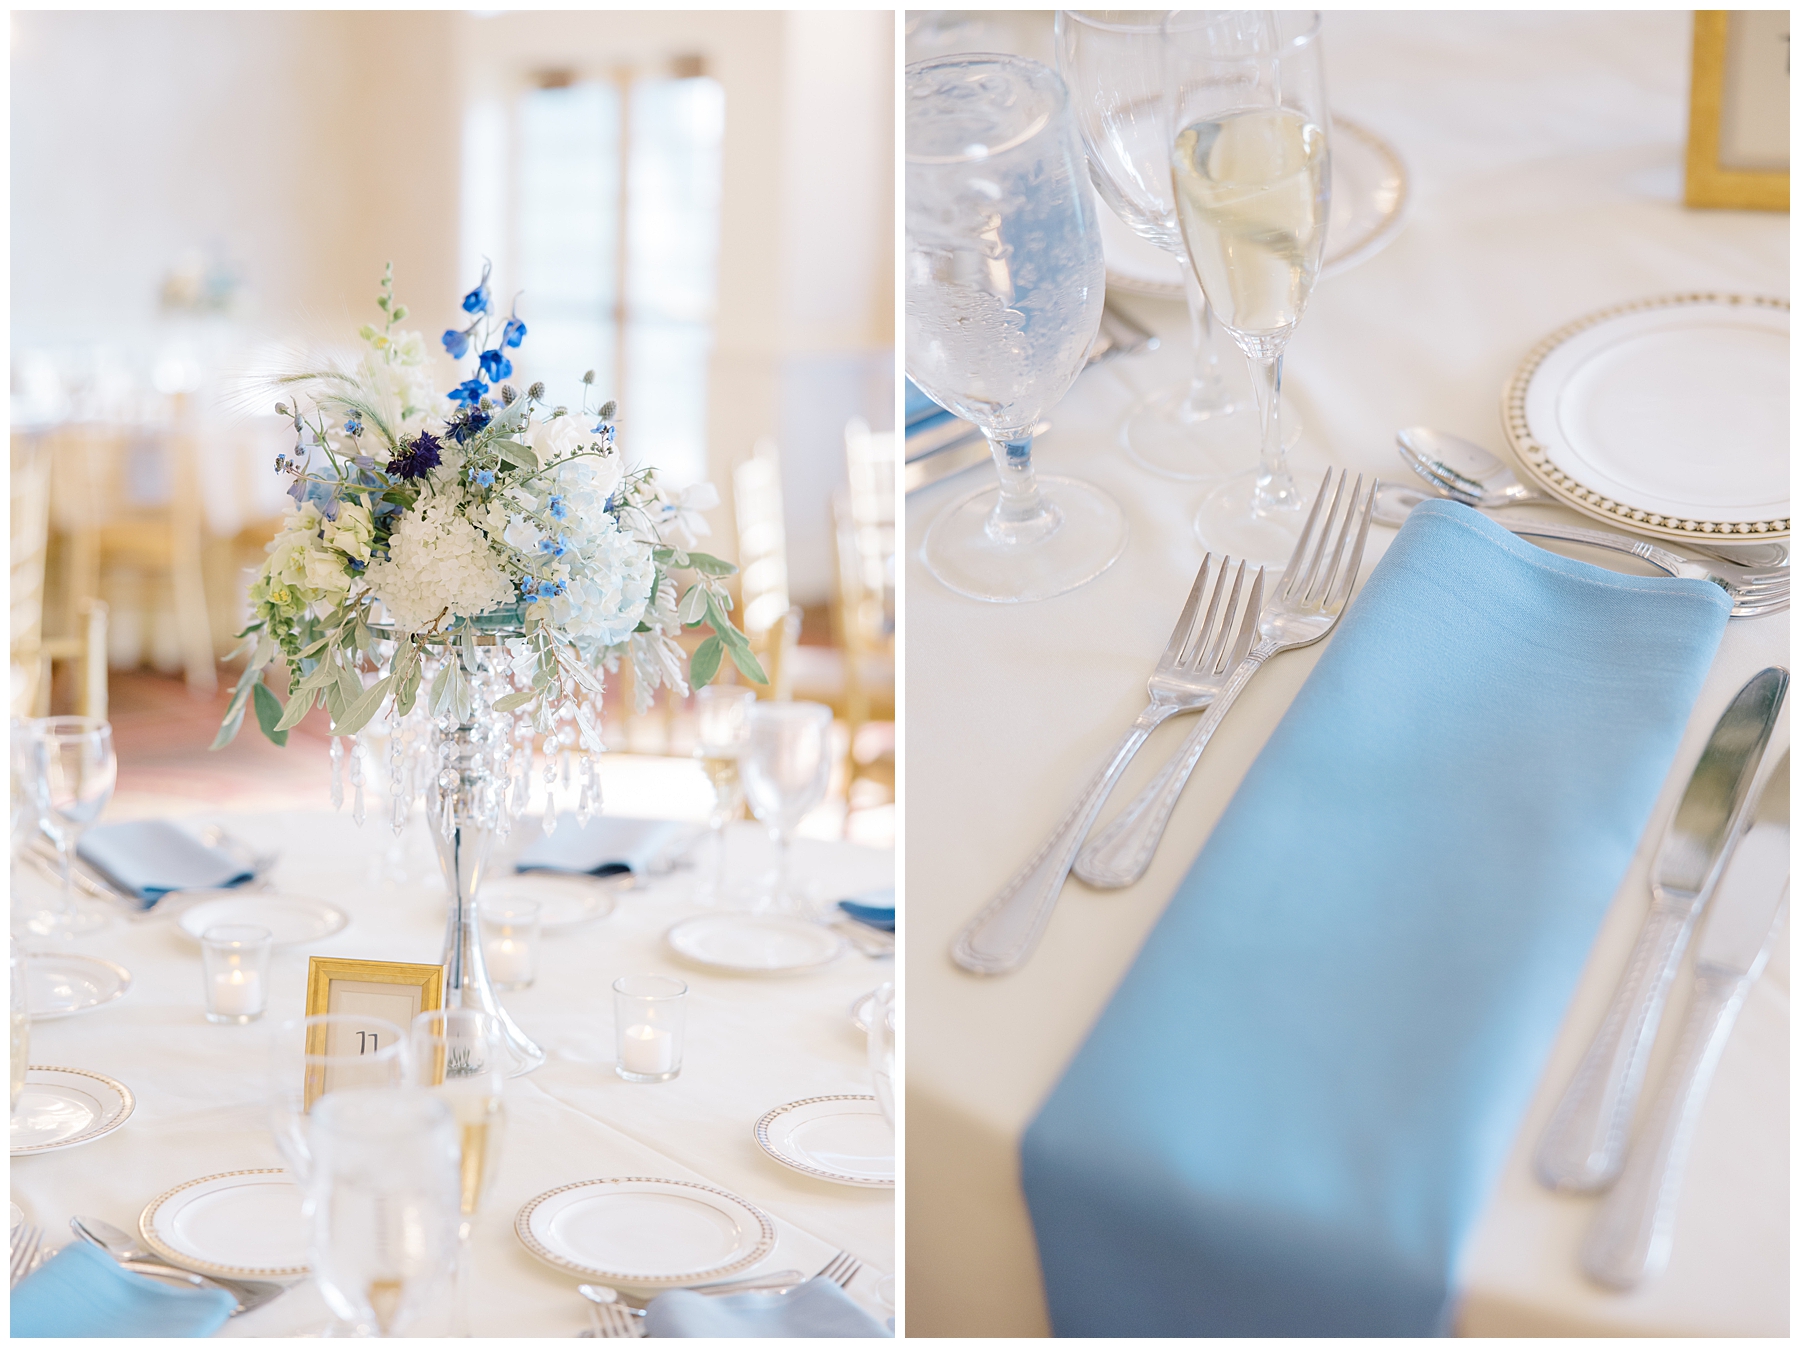 table setting details at Saint Clements Castle Fairytale Wedding reception